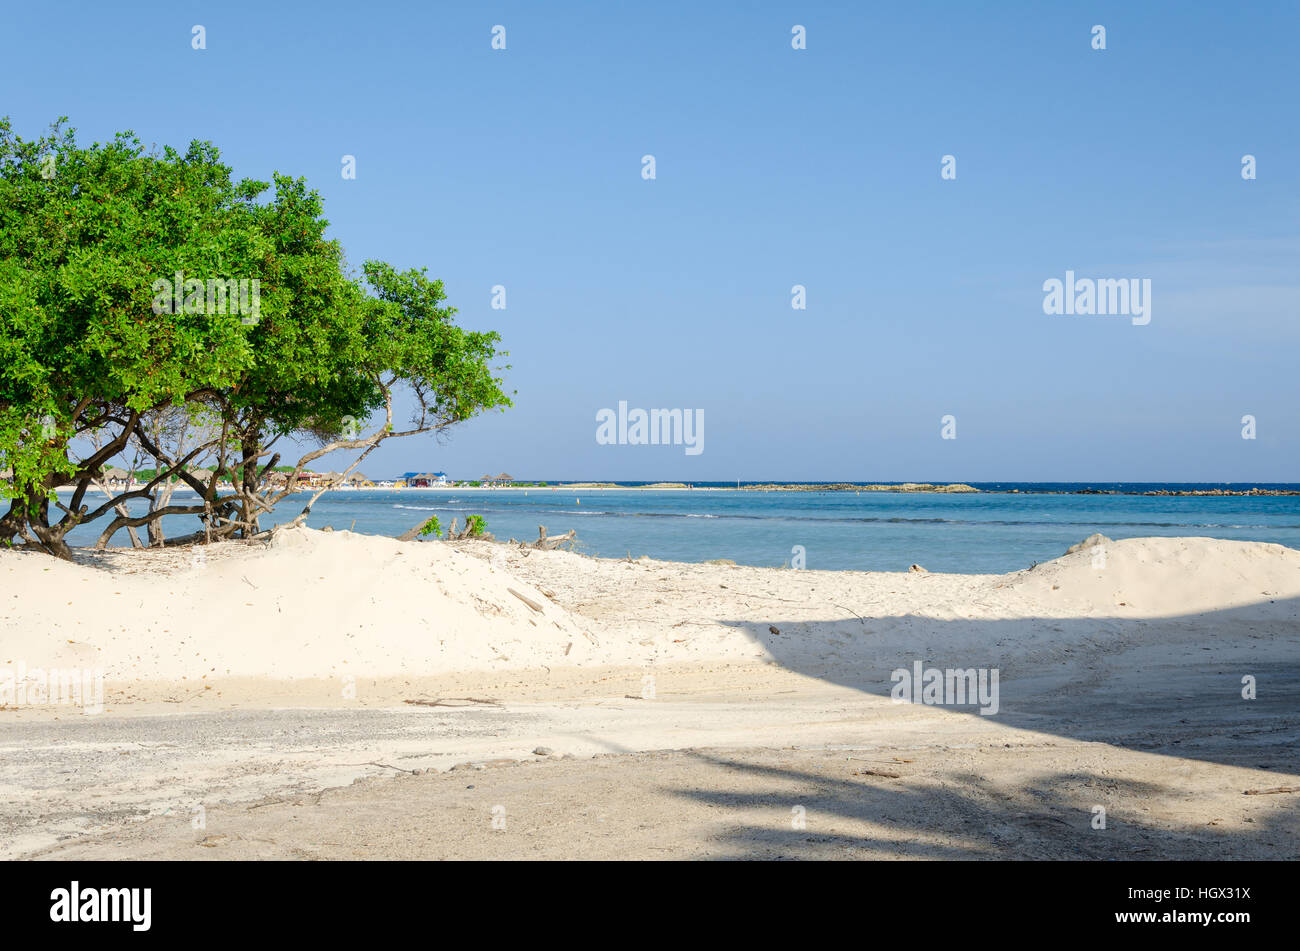 Aruba, Antilles - le 26 septembre 2012 : la vue étonnante de baby beach sur l'île d'Aruba dans la mer des Caraïbes Banque D'Images